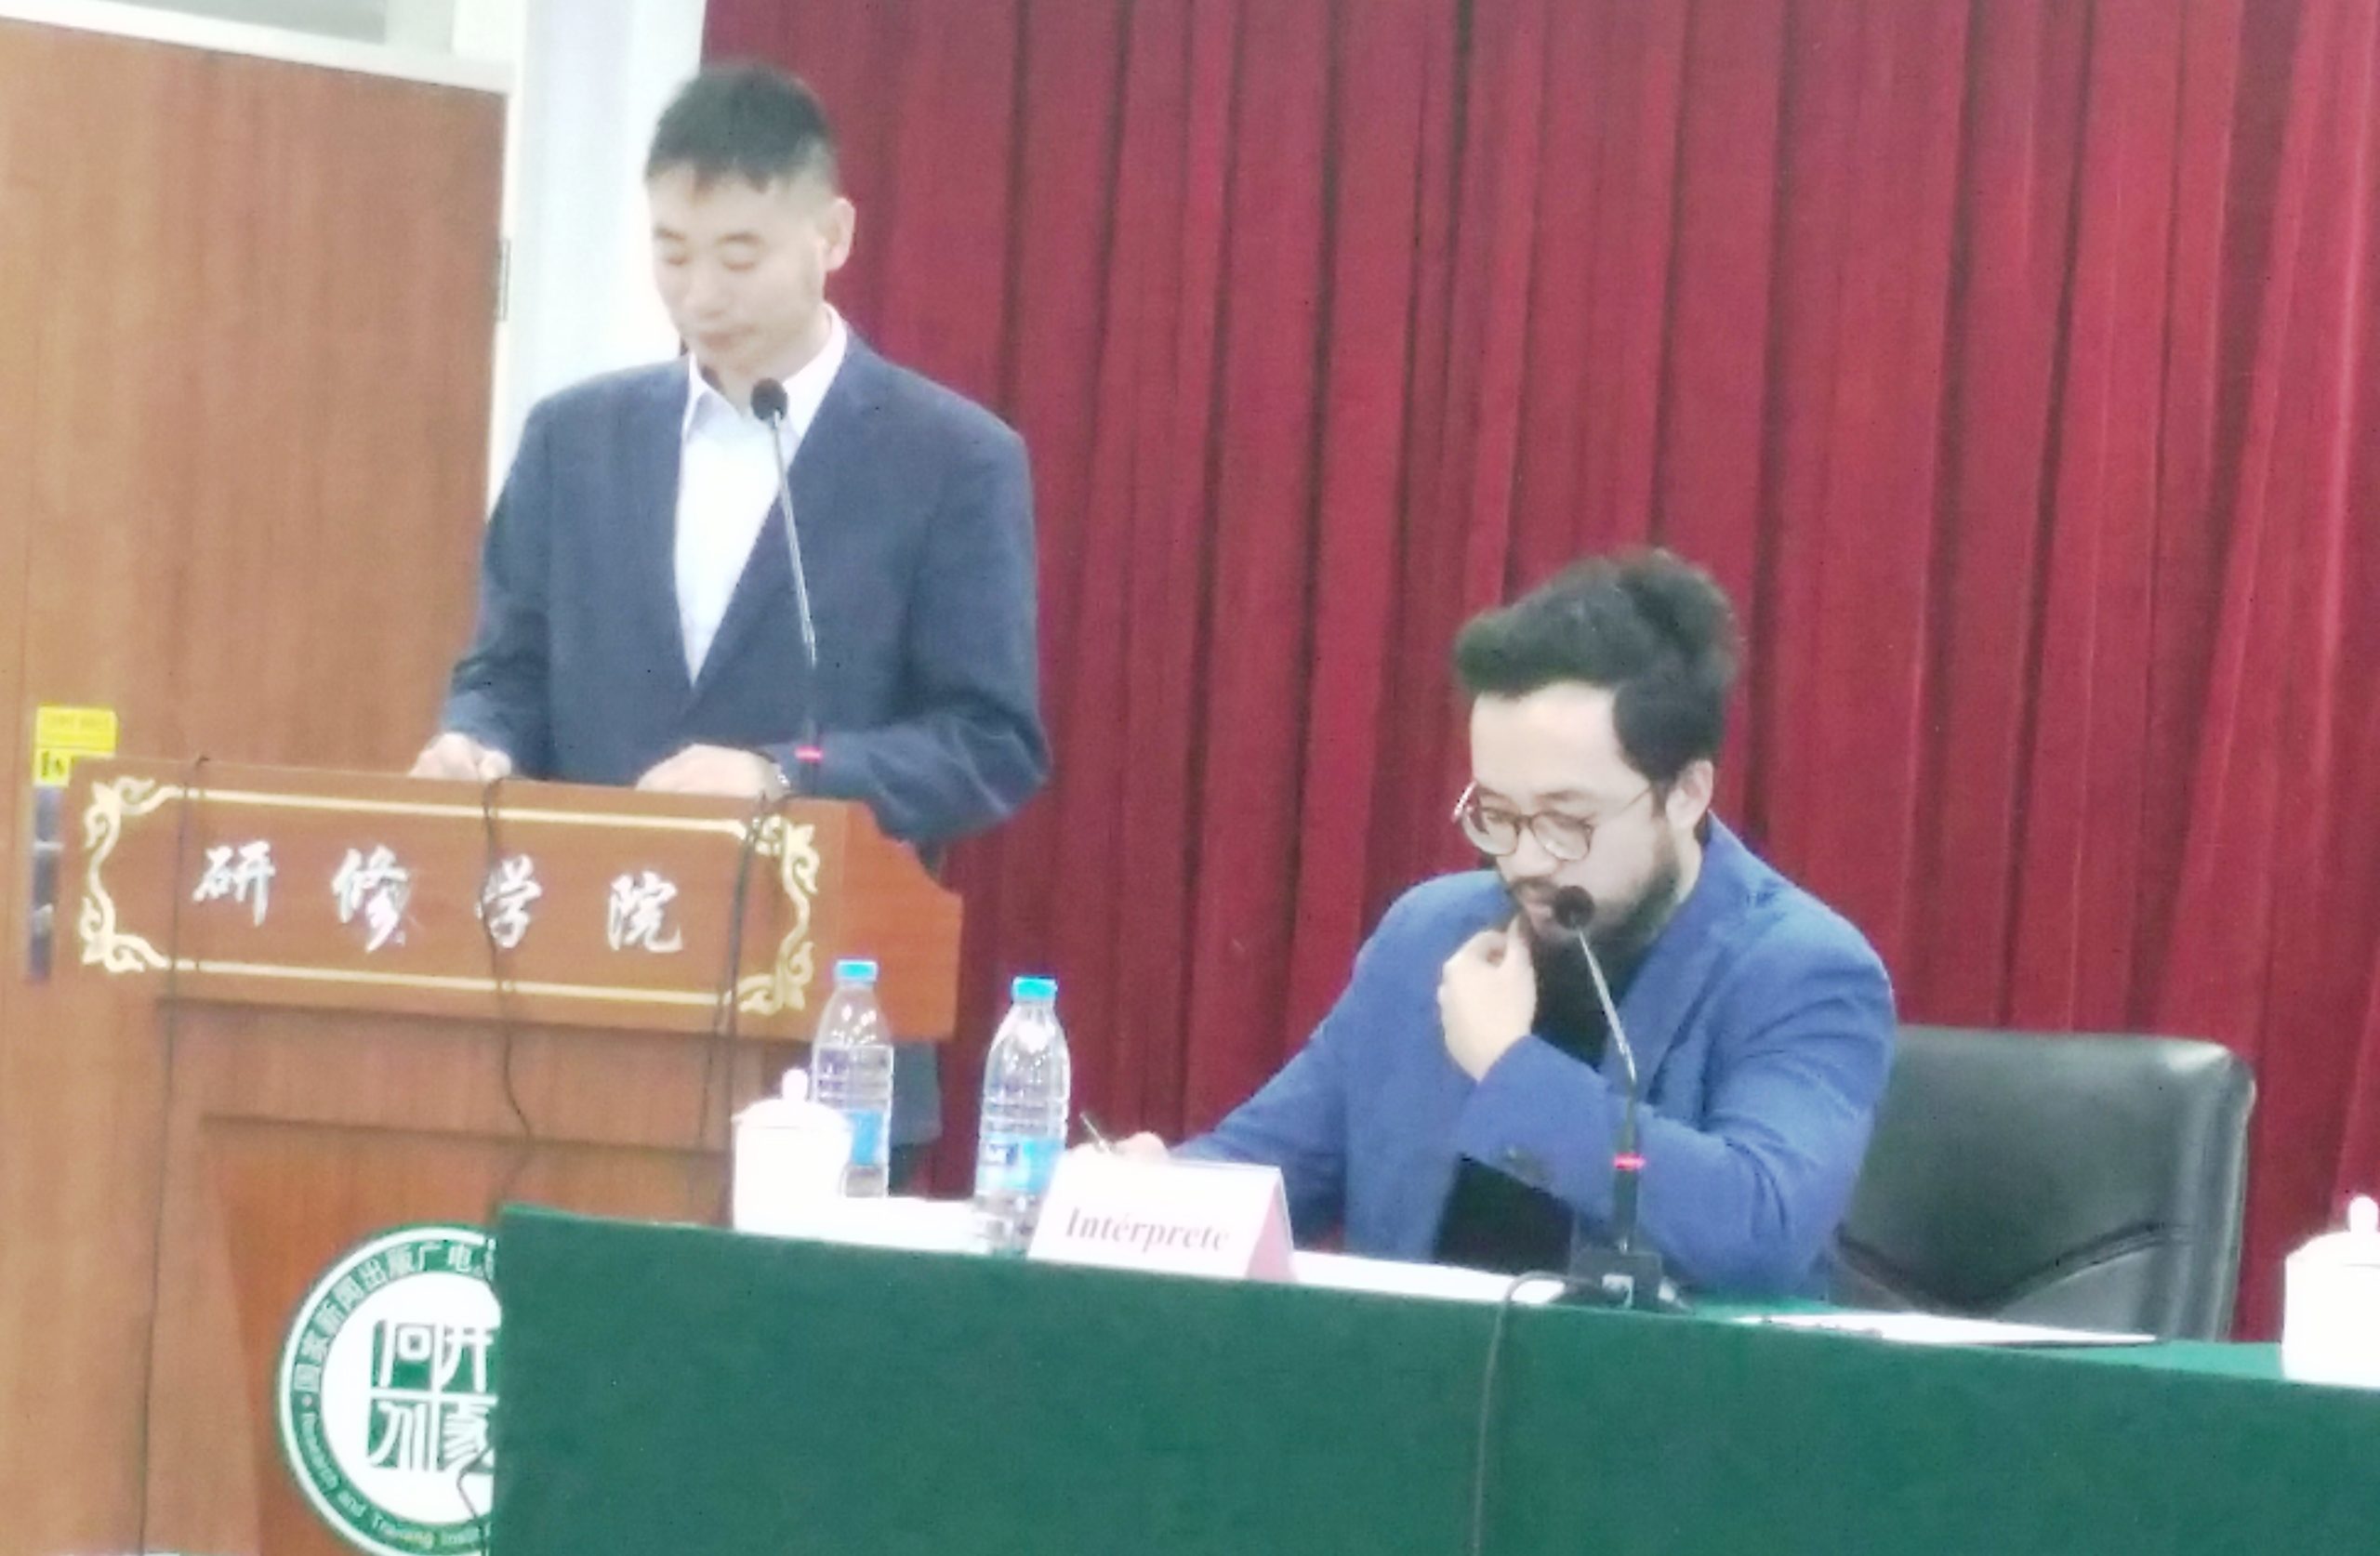 Fin du Séminaire de formation des journalistes centrafricains à Beijing